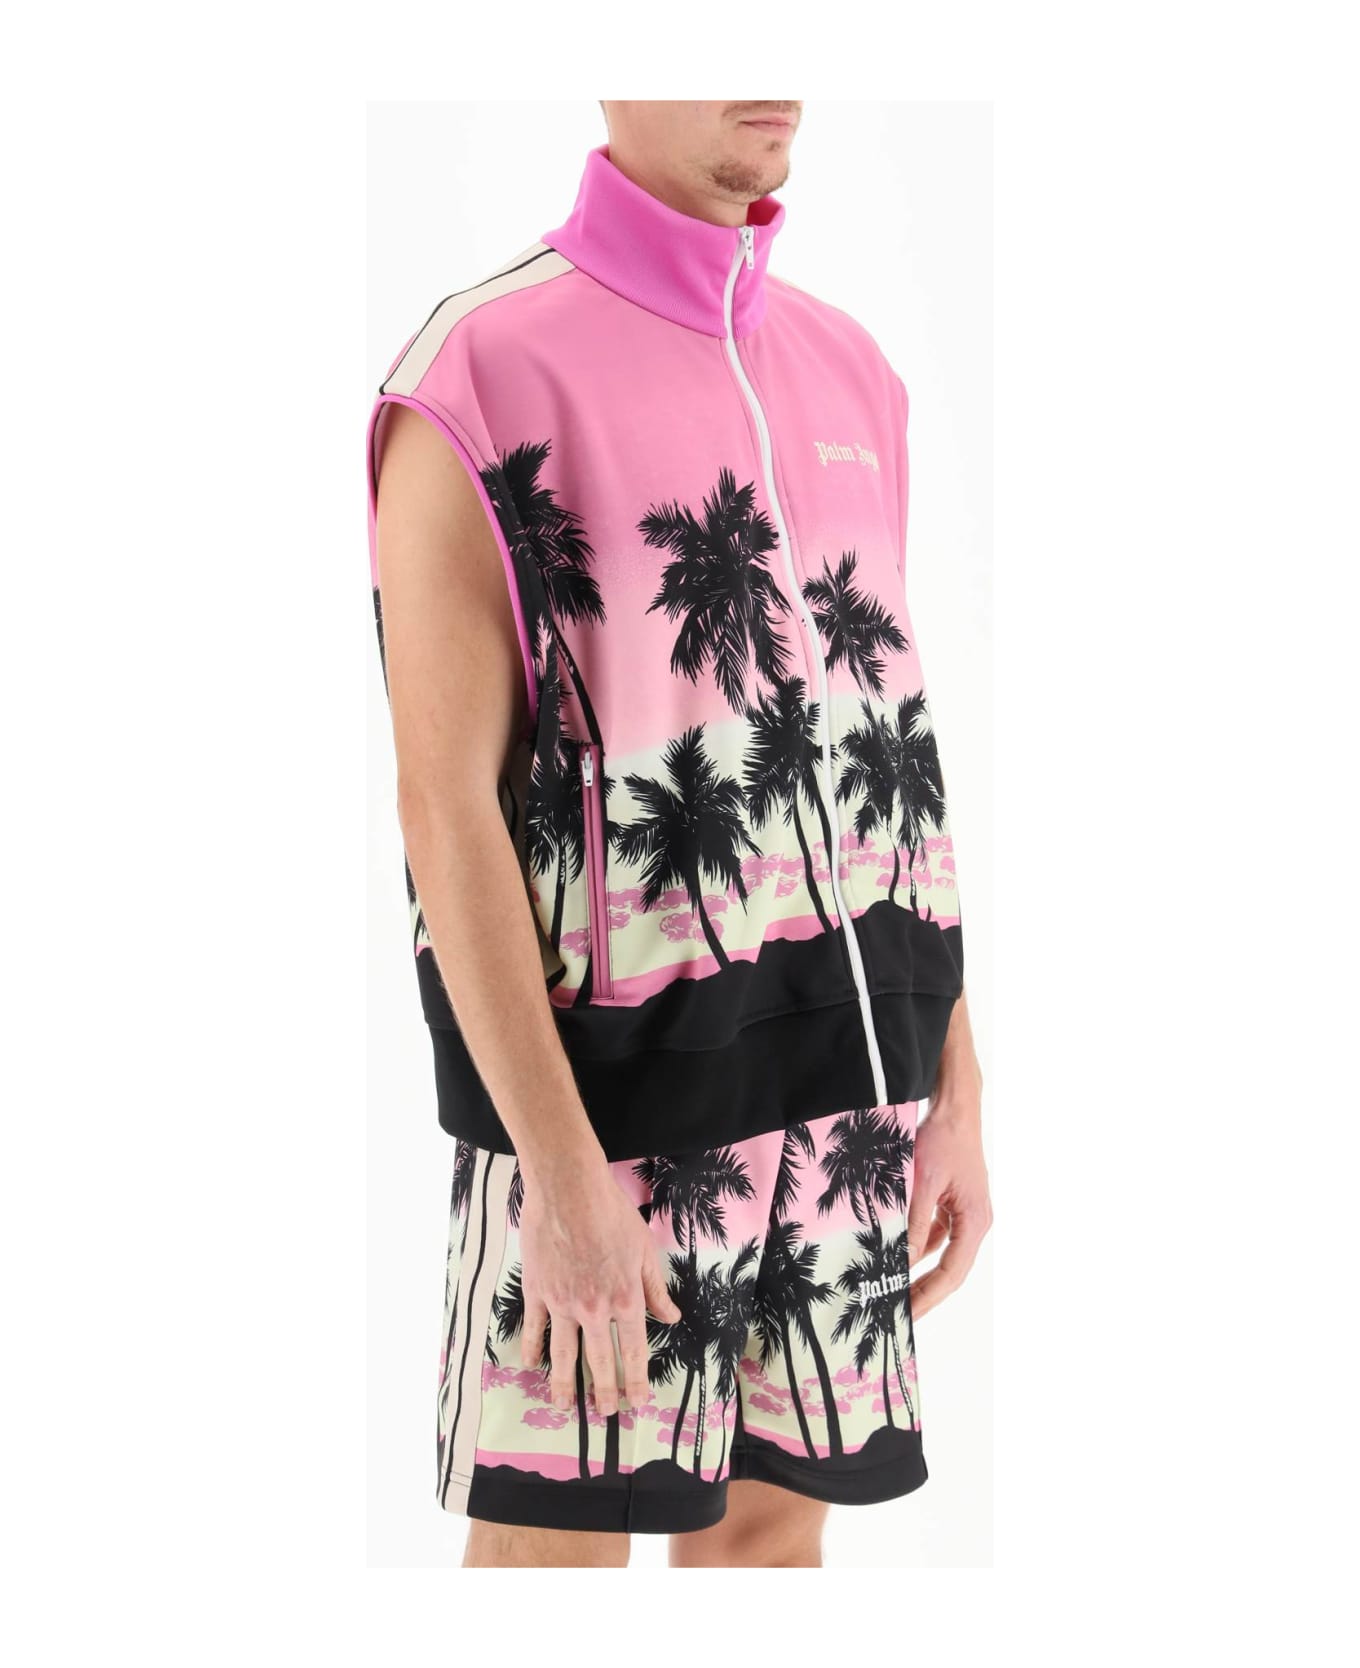 Palm Angels Sunset Track Vest - Pink